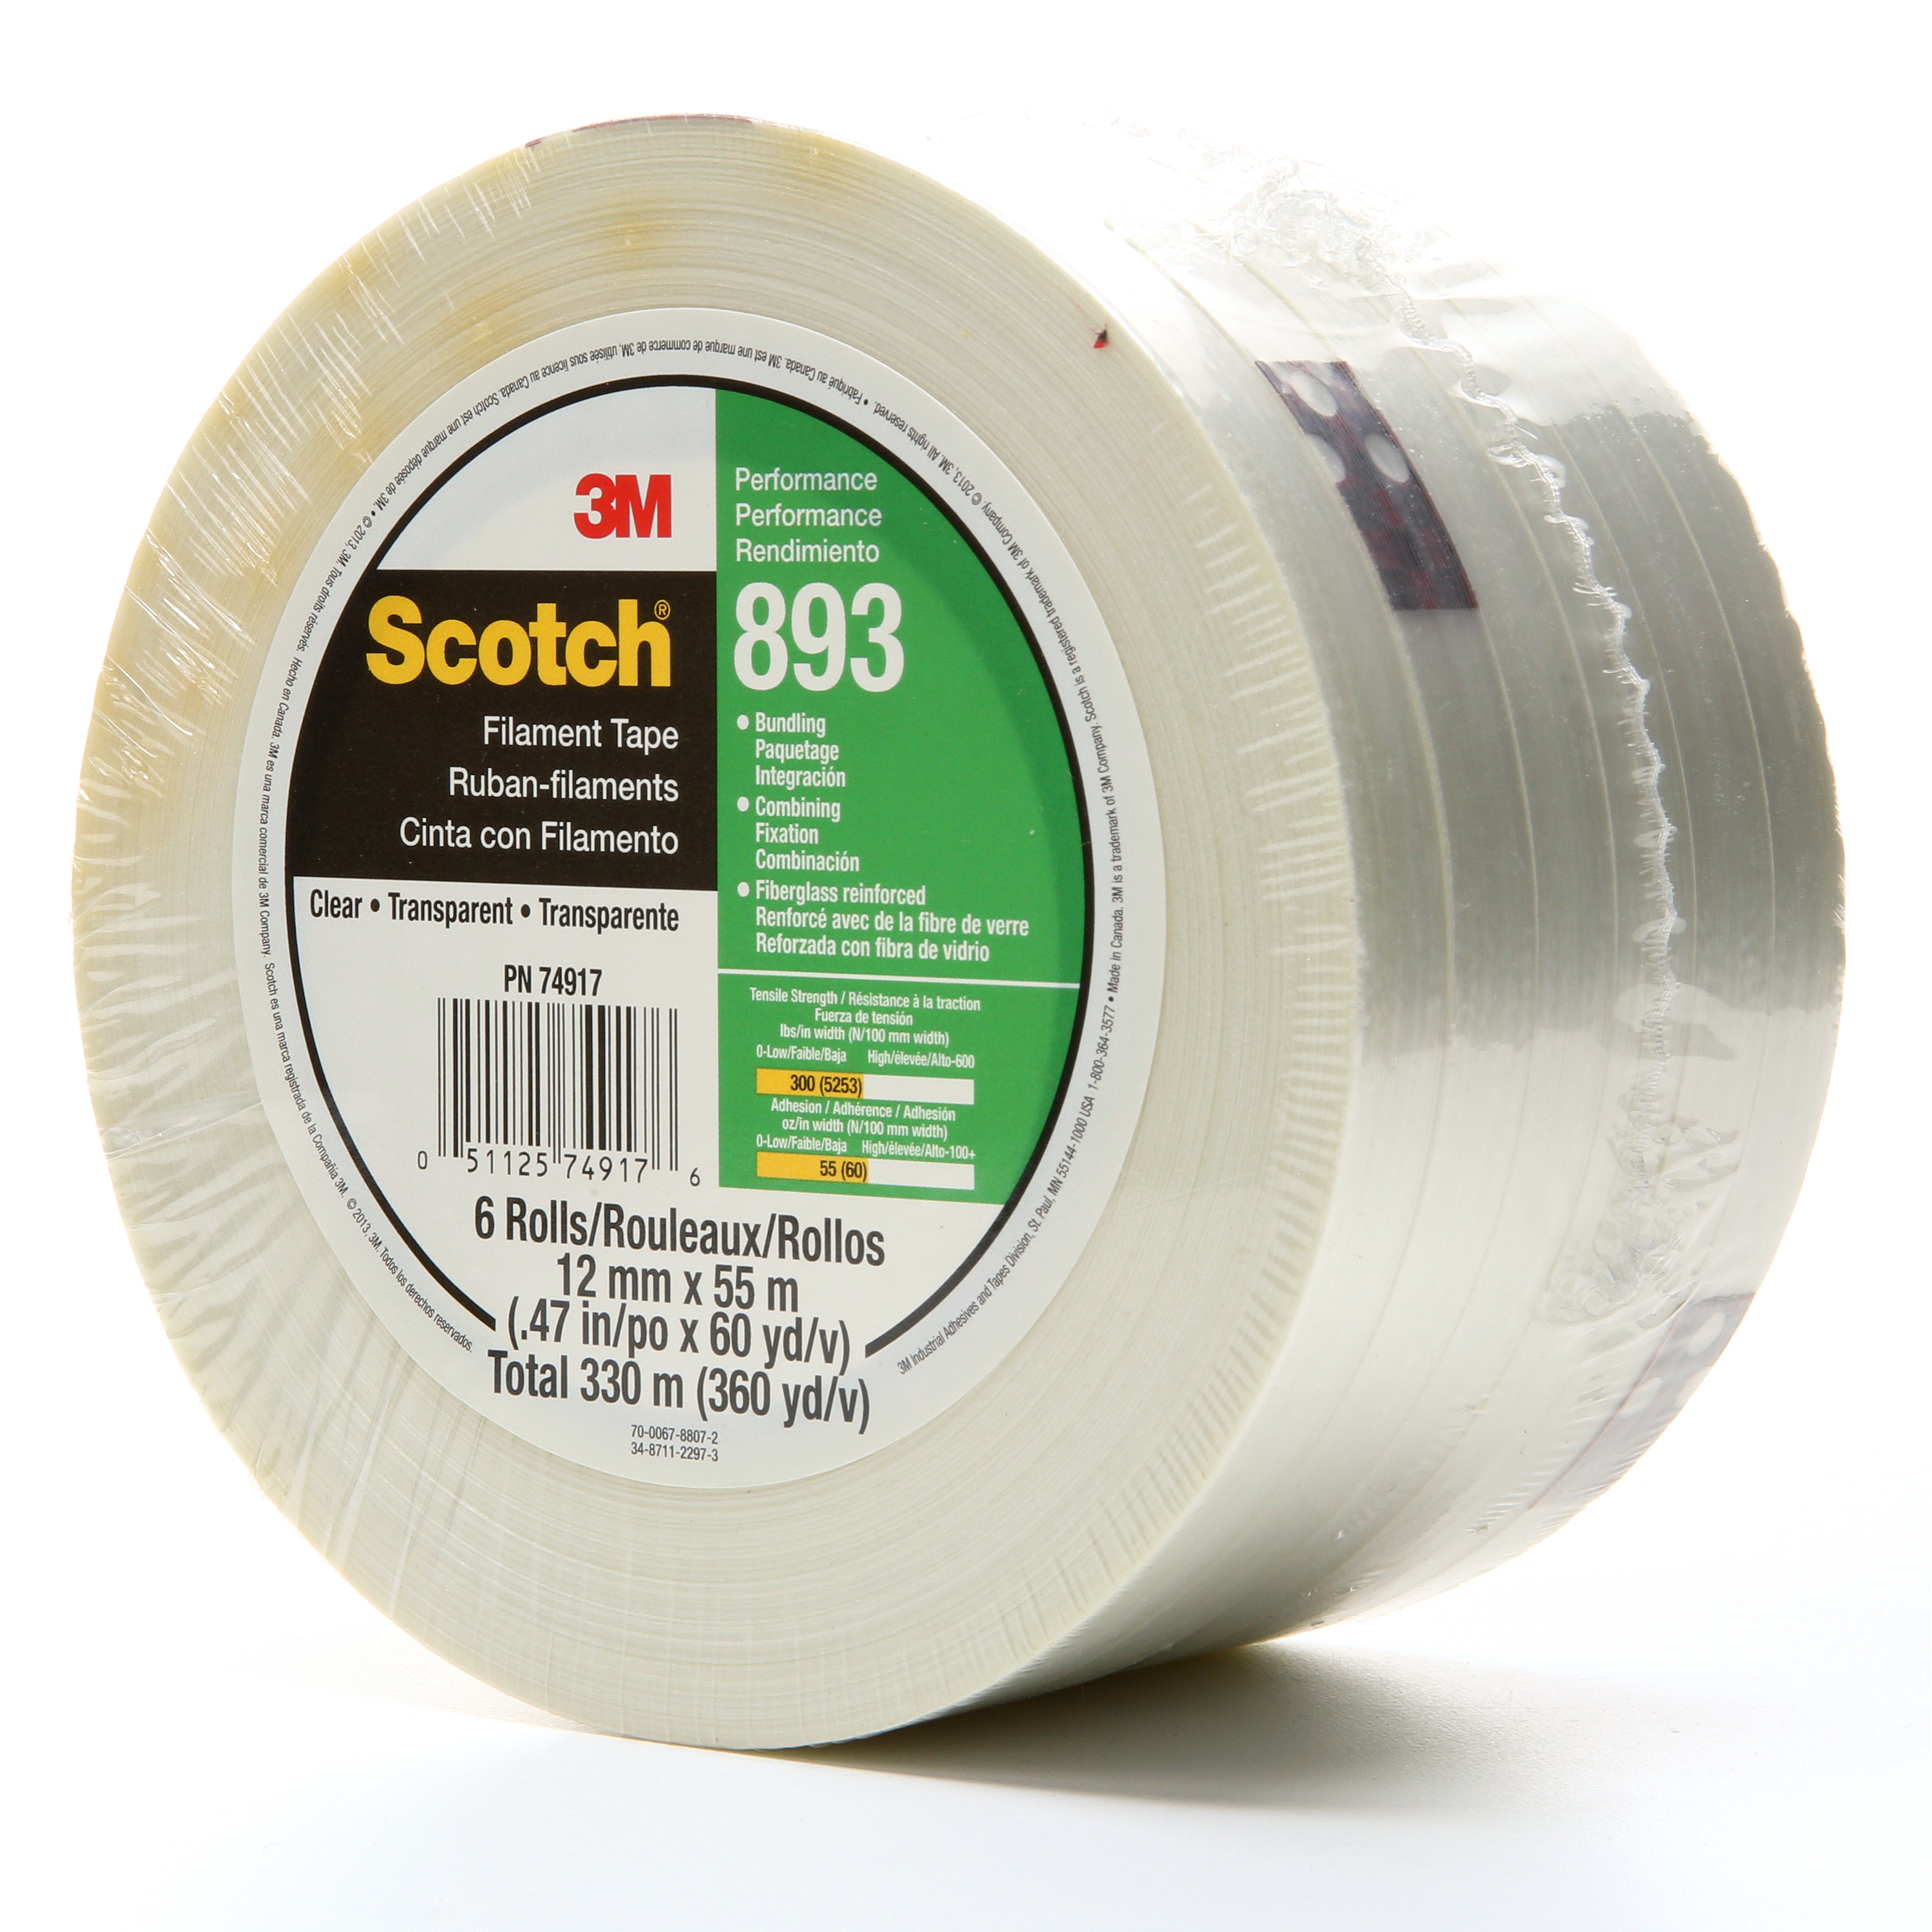 Scotch® Filament Tape 893, Clear, 12 mm x 330 m, 6 mil, 12 rolls per
case